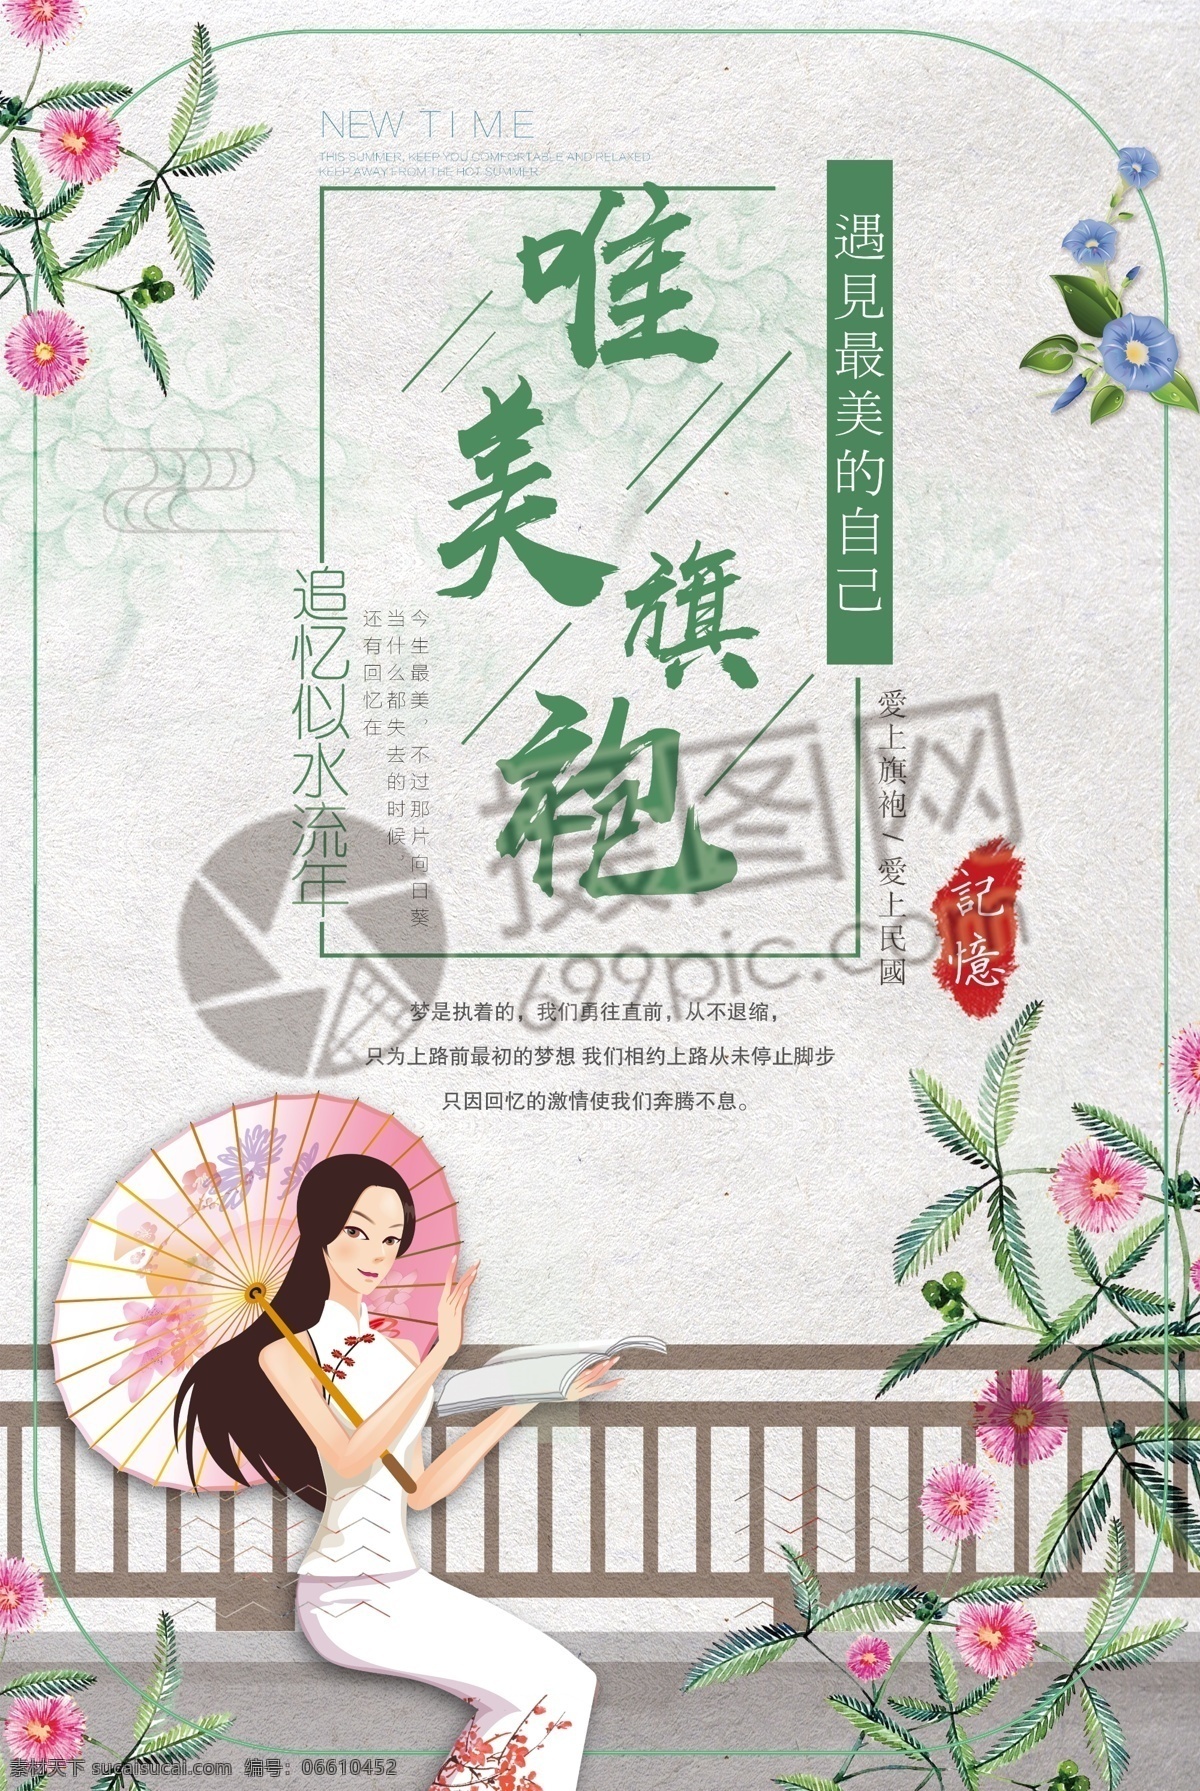 中国 风 唯美 旗袍 海报 中国风 服饰 服装 女装 美人 美女 女性 清新 绿色